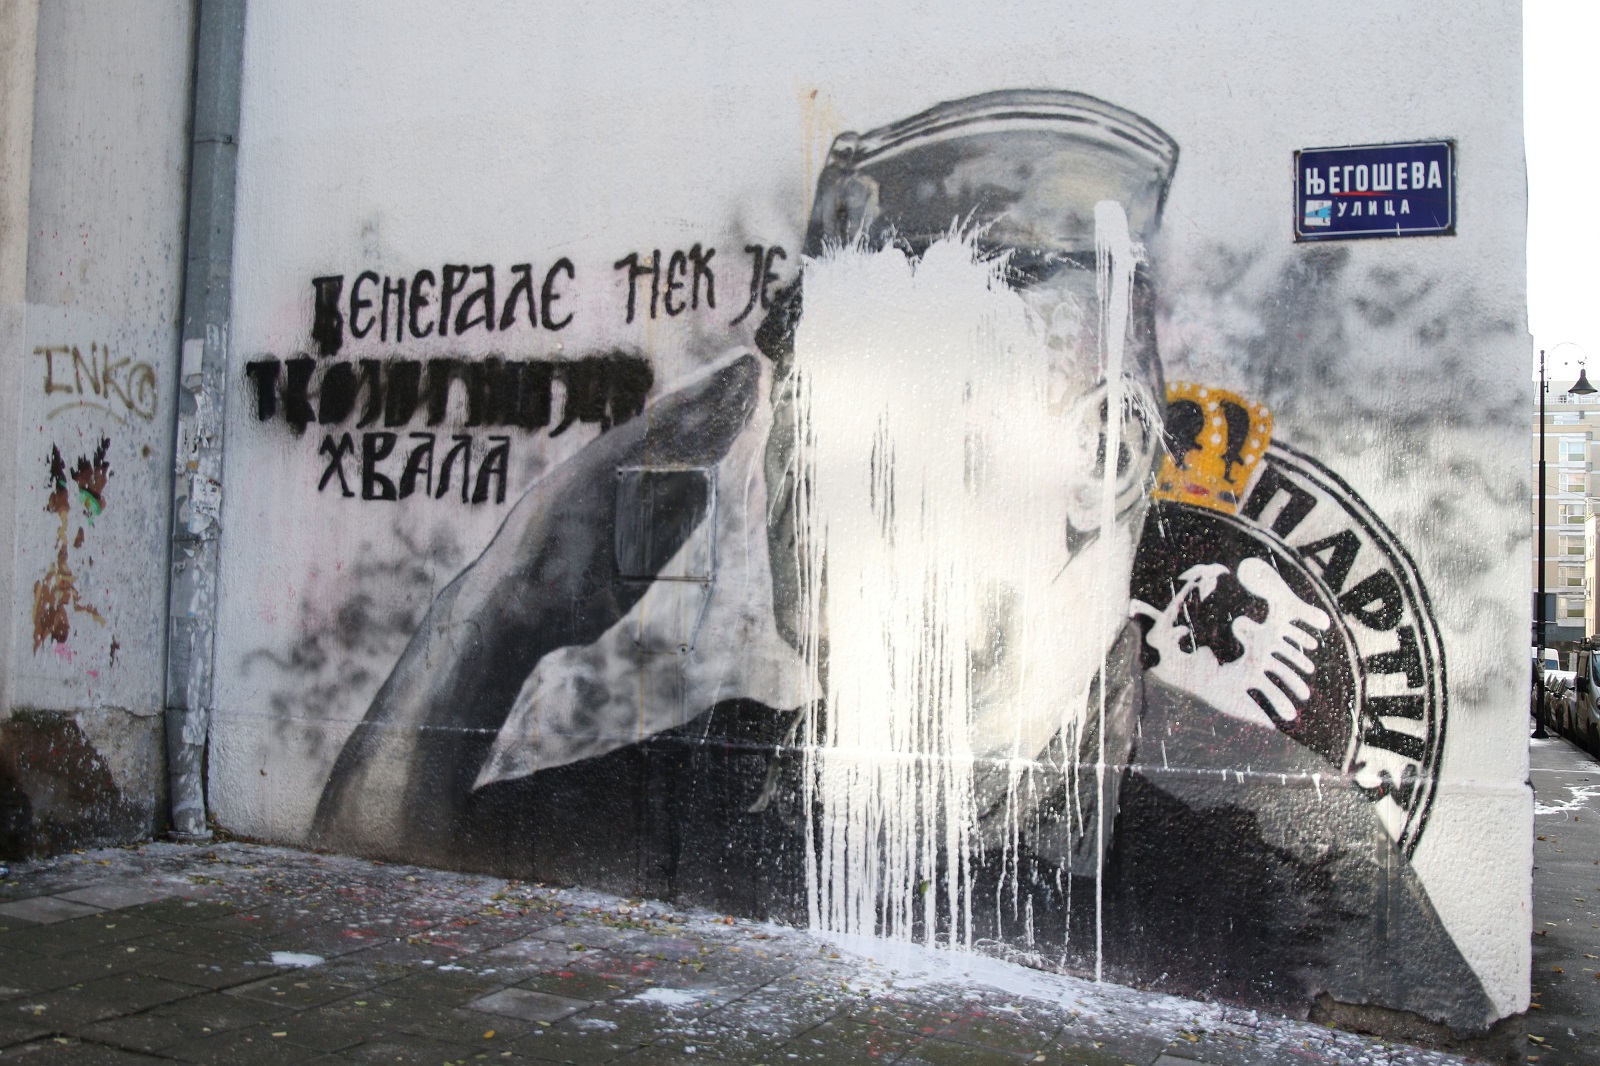 Beograd, 10.11.2021 - Mural posveæen osuðeniku za ratne zloèine Ratku Mladiæu u Beogradu prebojan je u noæi izmeðu srijede i èetvrtka, nakon to su u srijedu zbog jaja baèenih na oslikan Mladiæev lik, uhiæene dvije aktivistice za ljudska prava, a brojne graðanske udruge odrale prosvjed koji je policija kontrolirala s tri kordona.
foto HINA/ Velimir ILIÆ/ ik